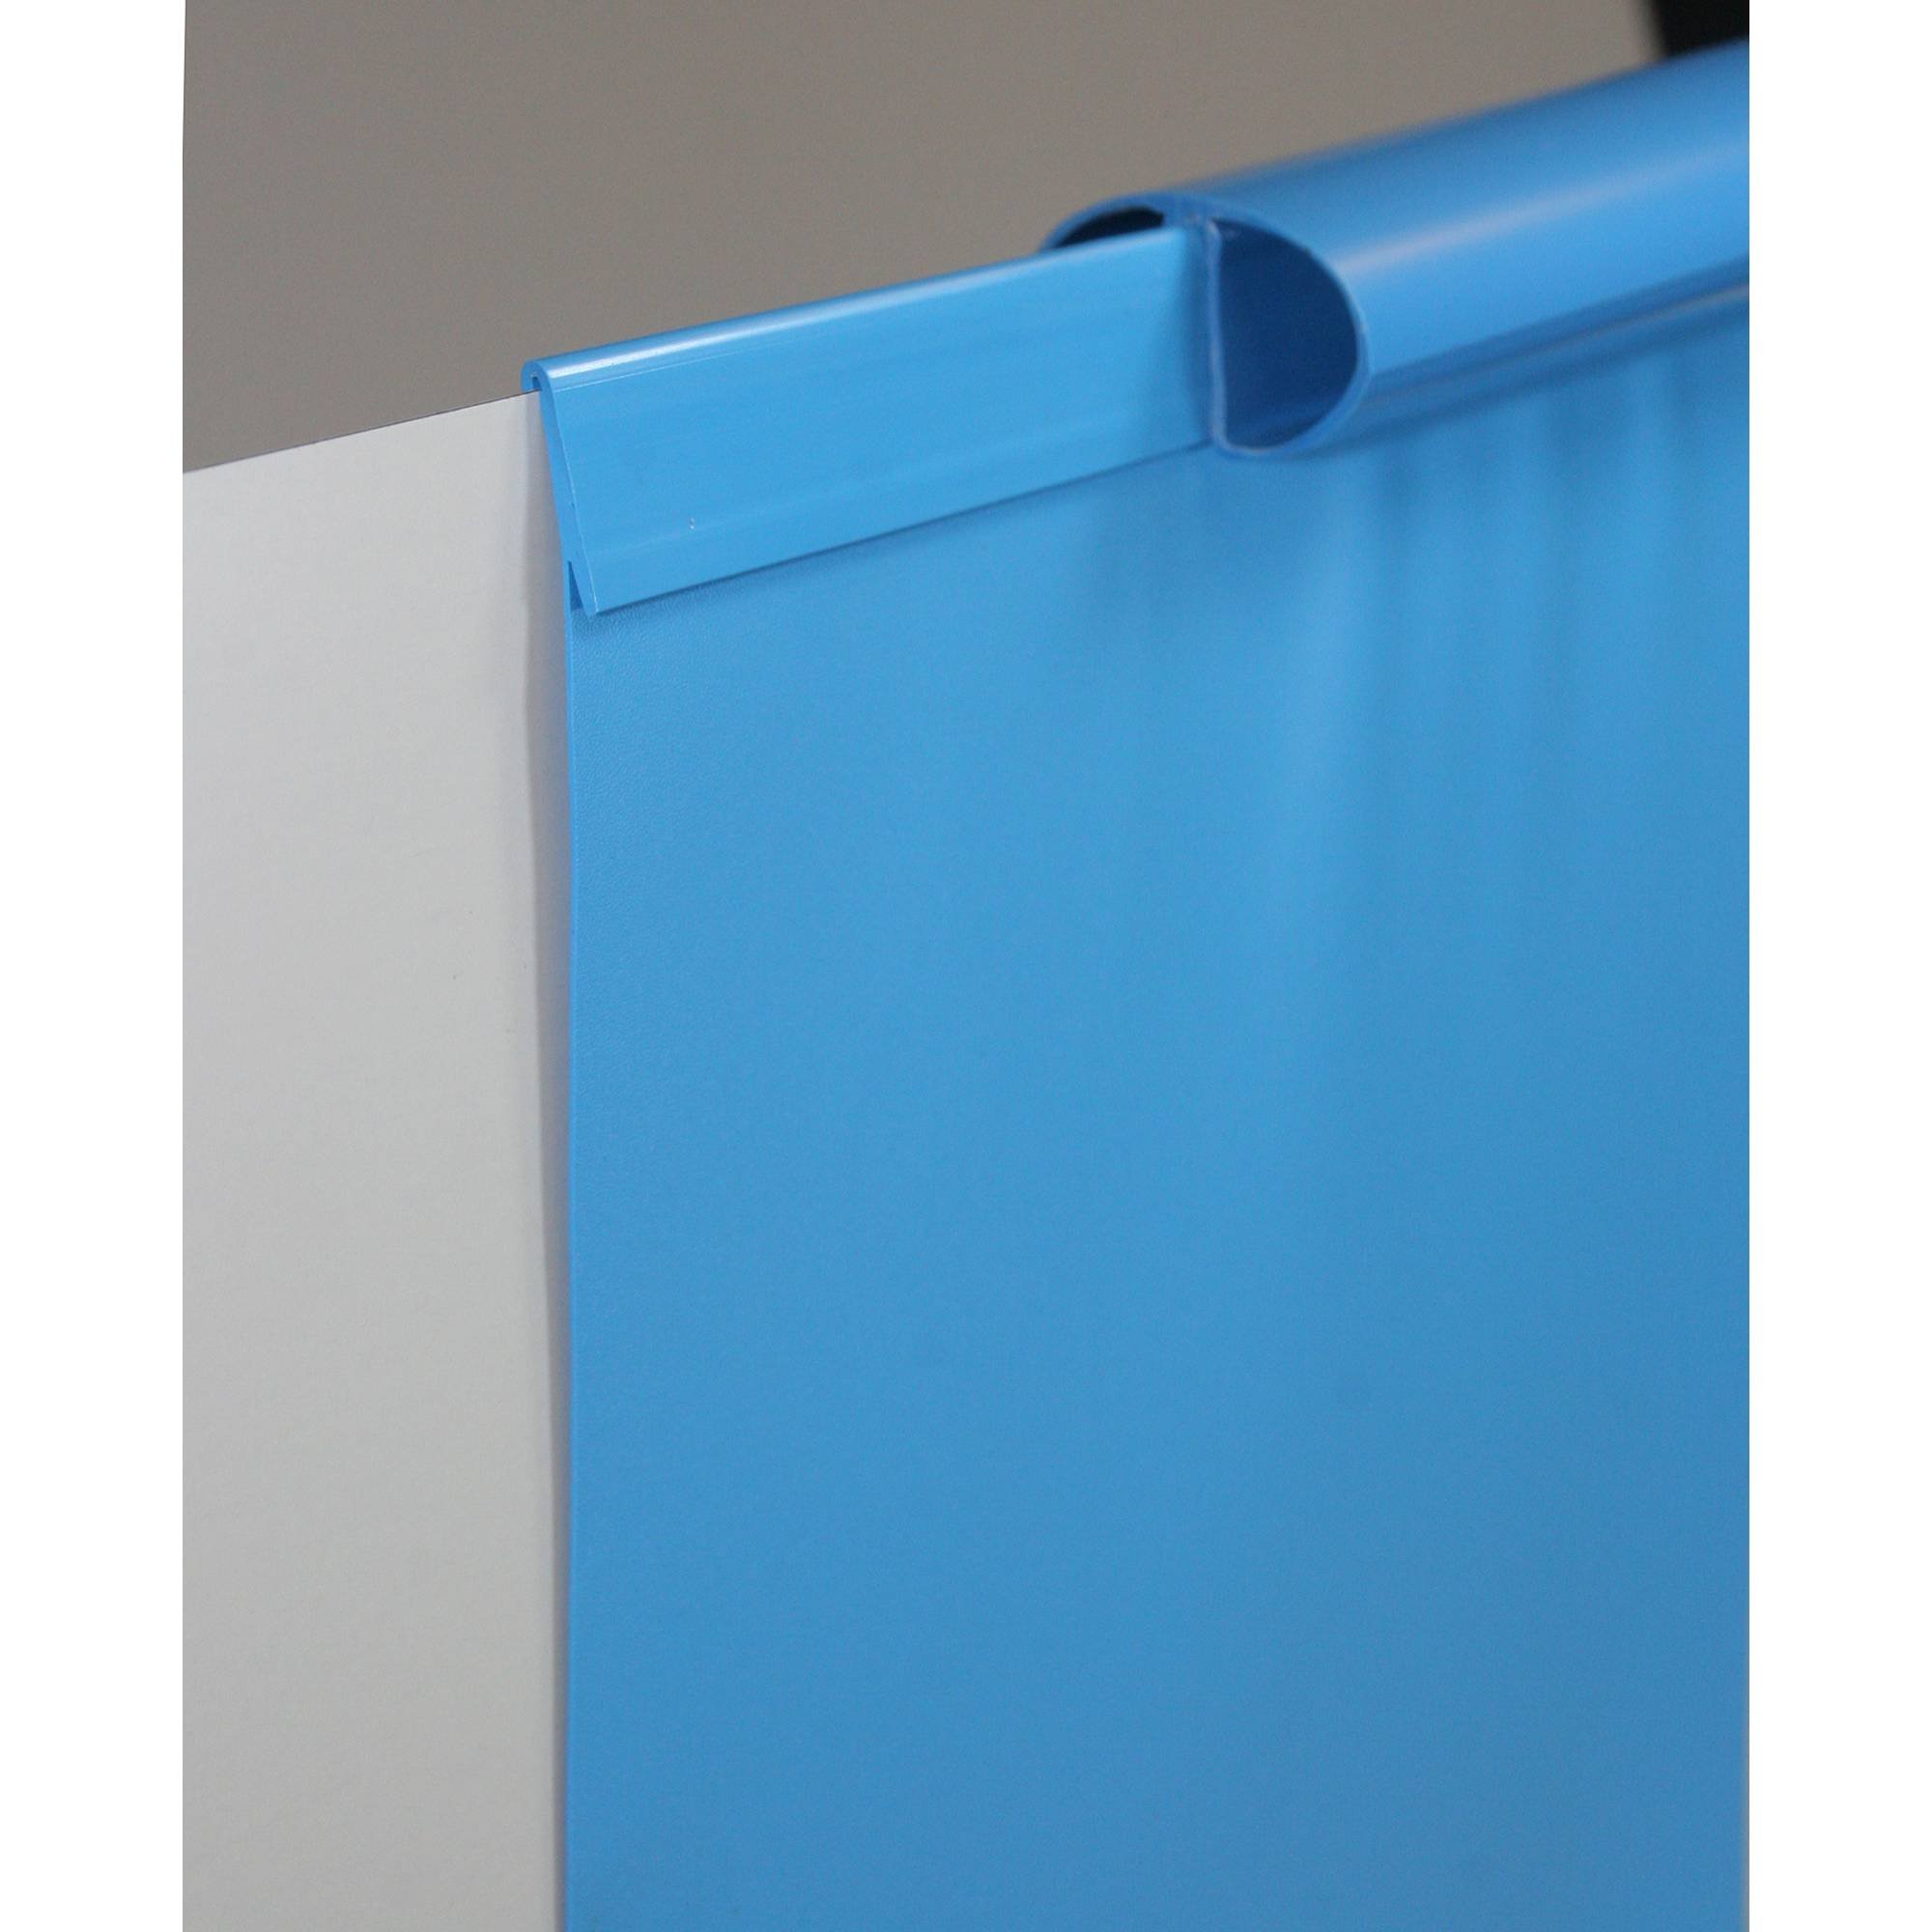 Poolfolie Ersatzfolie Rundbecken 450x120cm - Dicke 0,6mm - Einhängebiese - blau